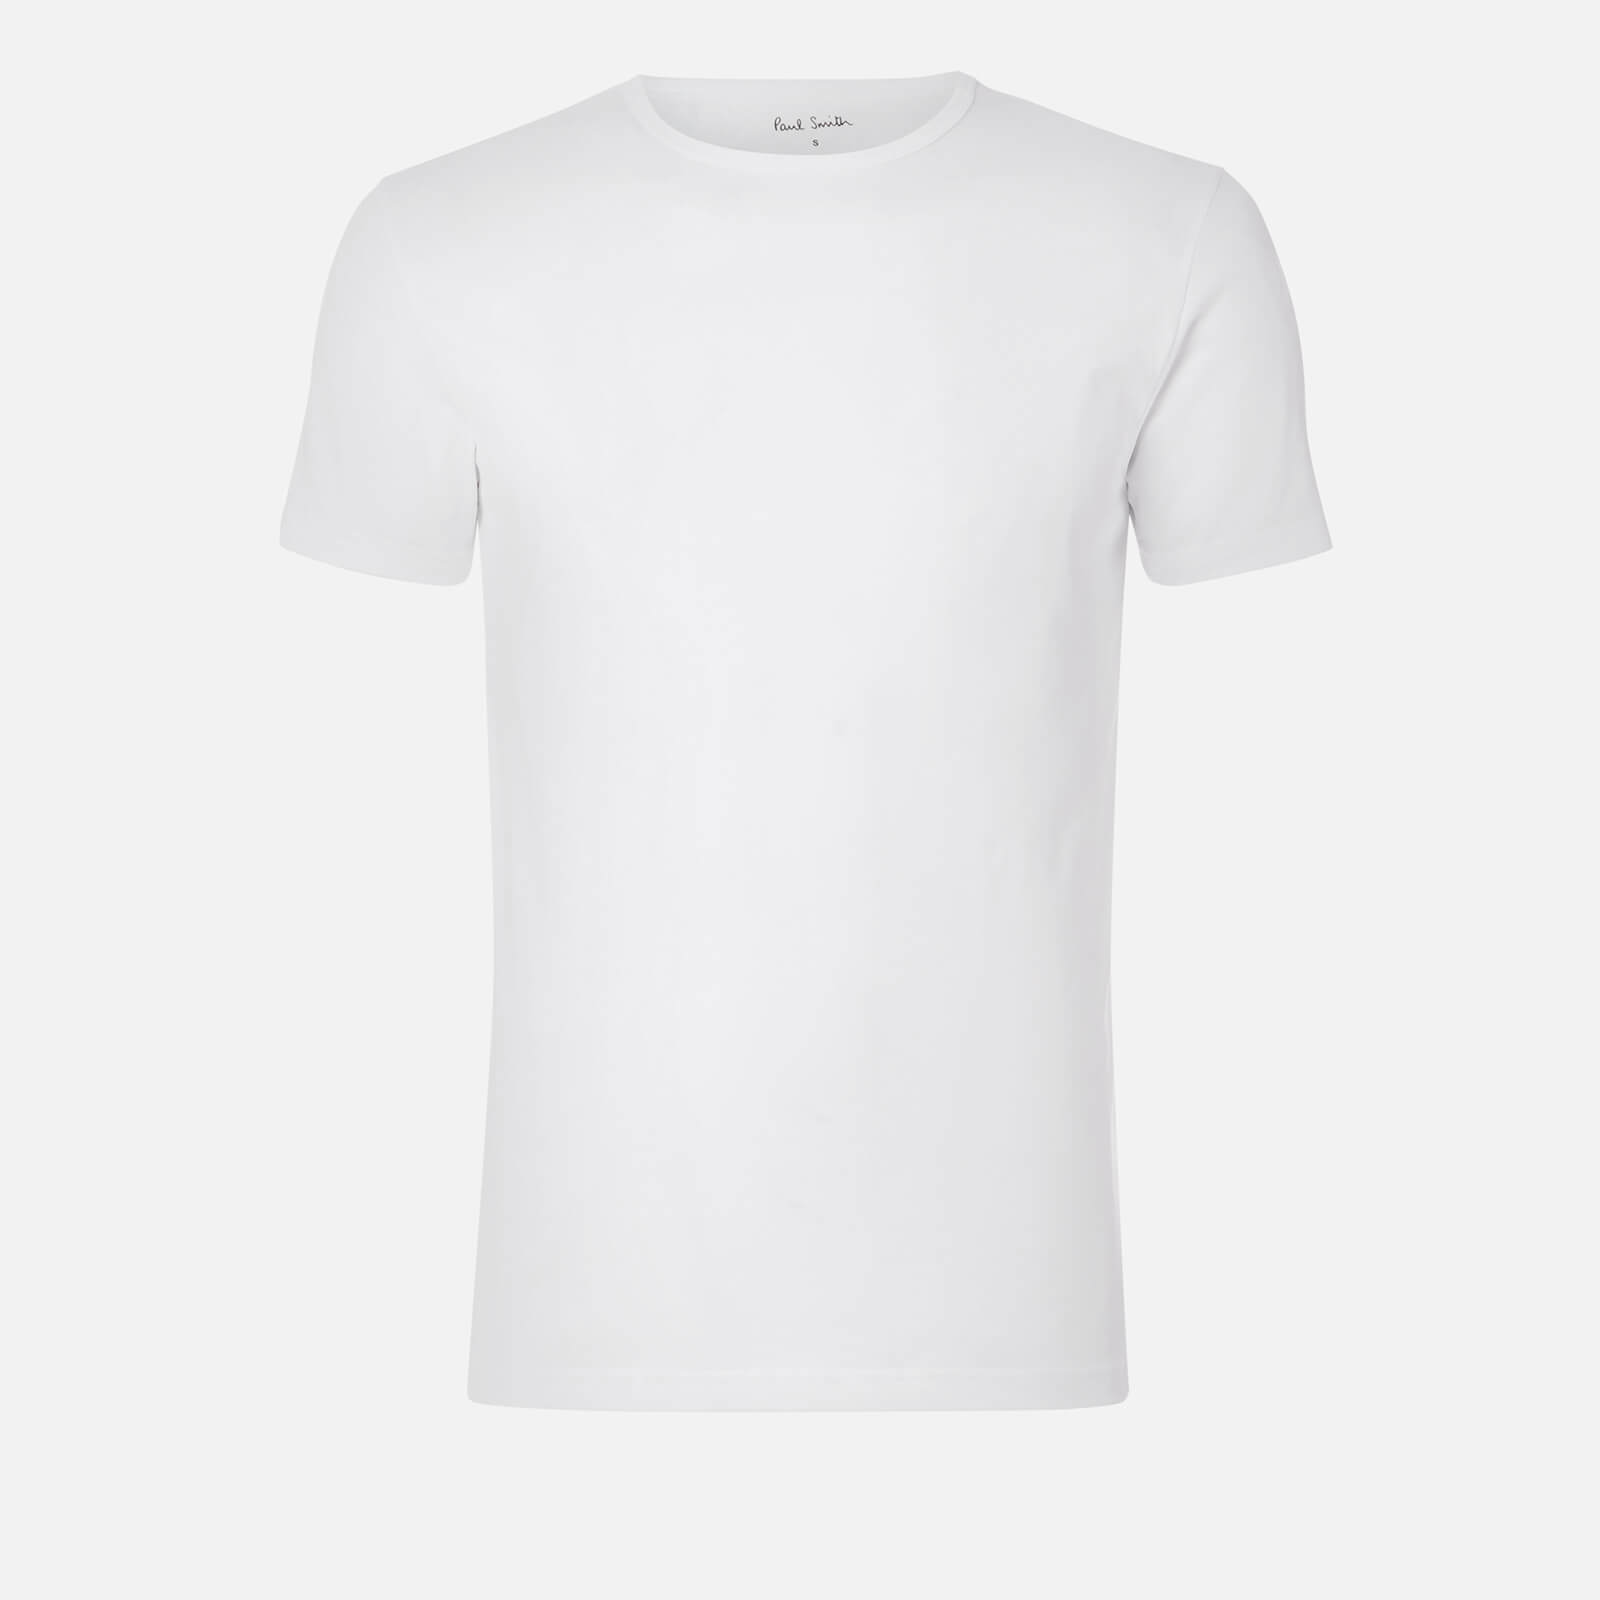 PS Paul Smith Men's 3-Pack Crewneck T-Shirts - White - M